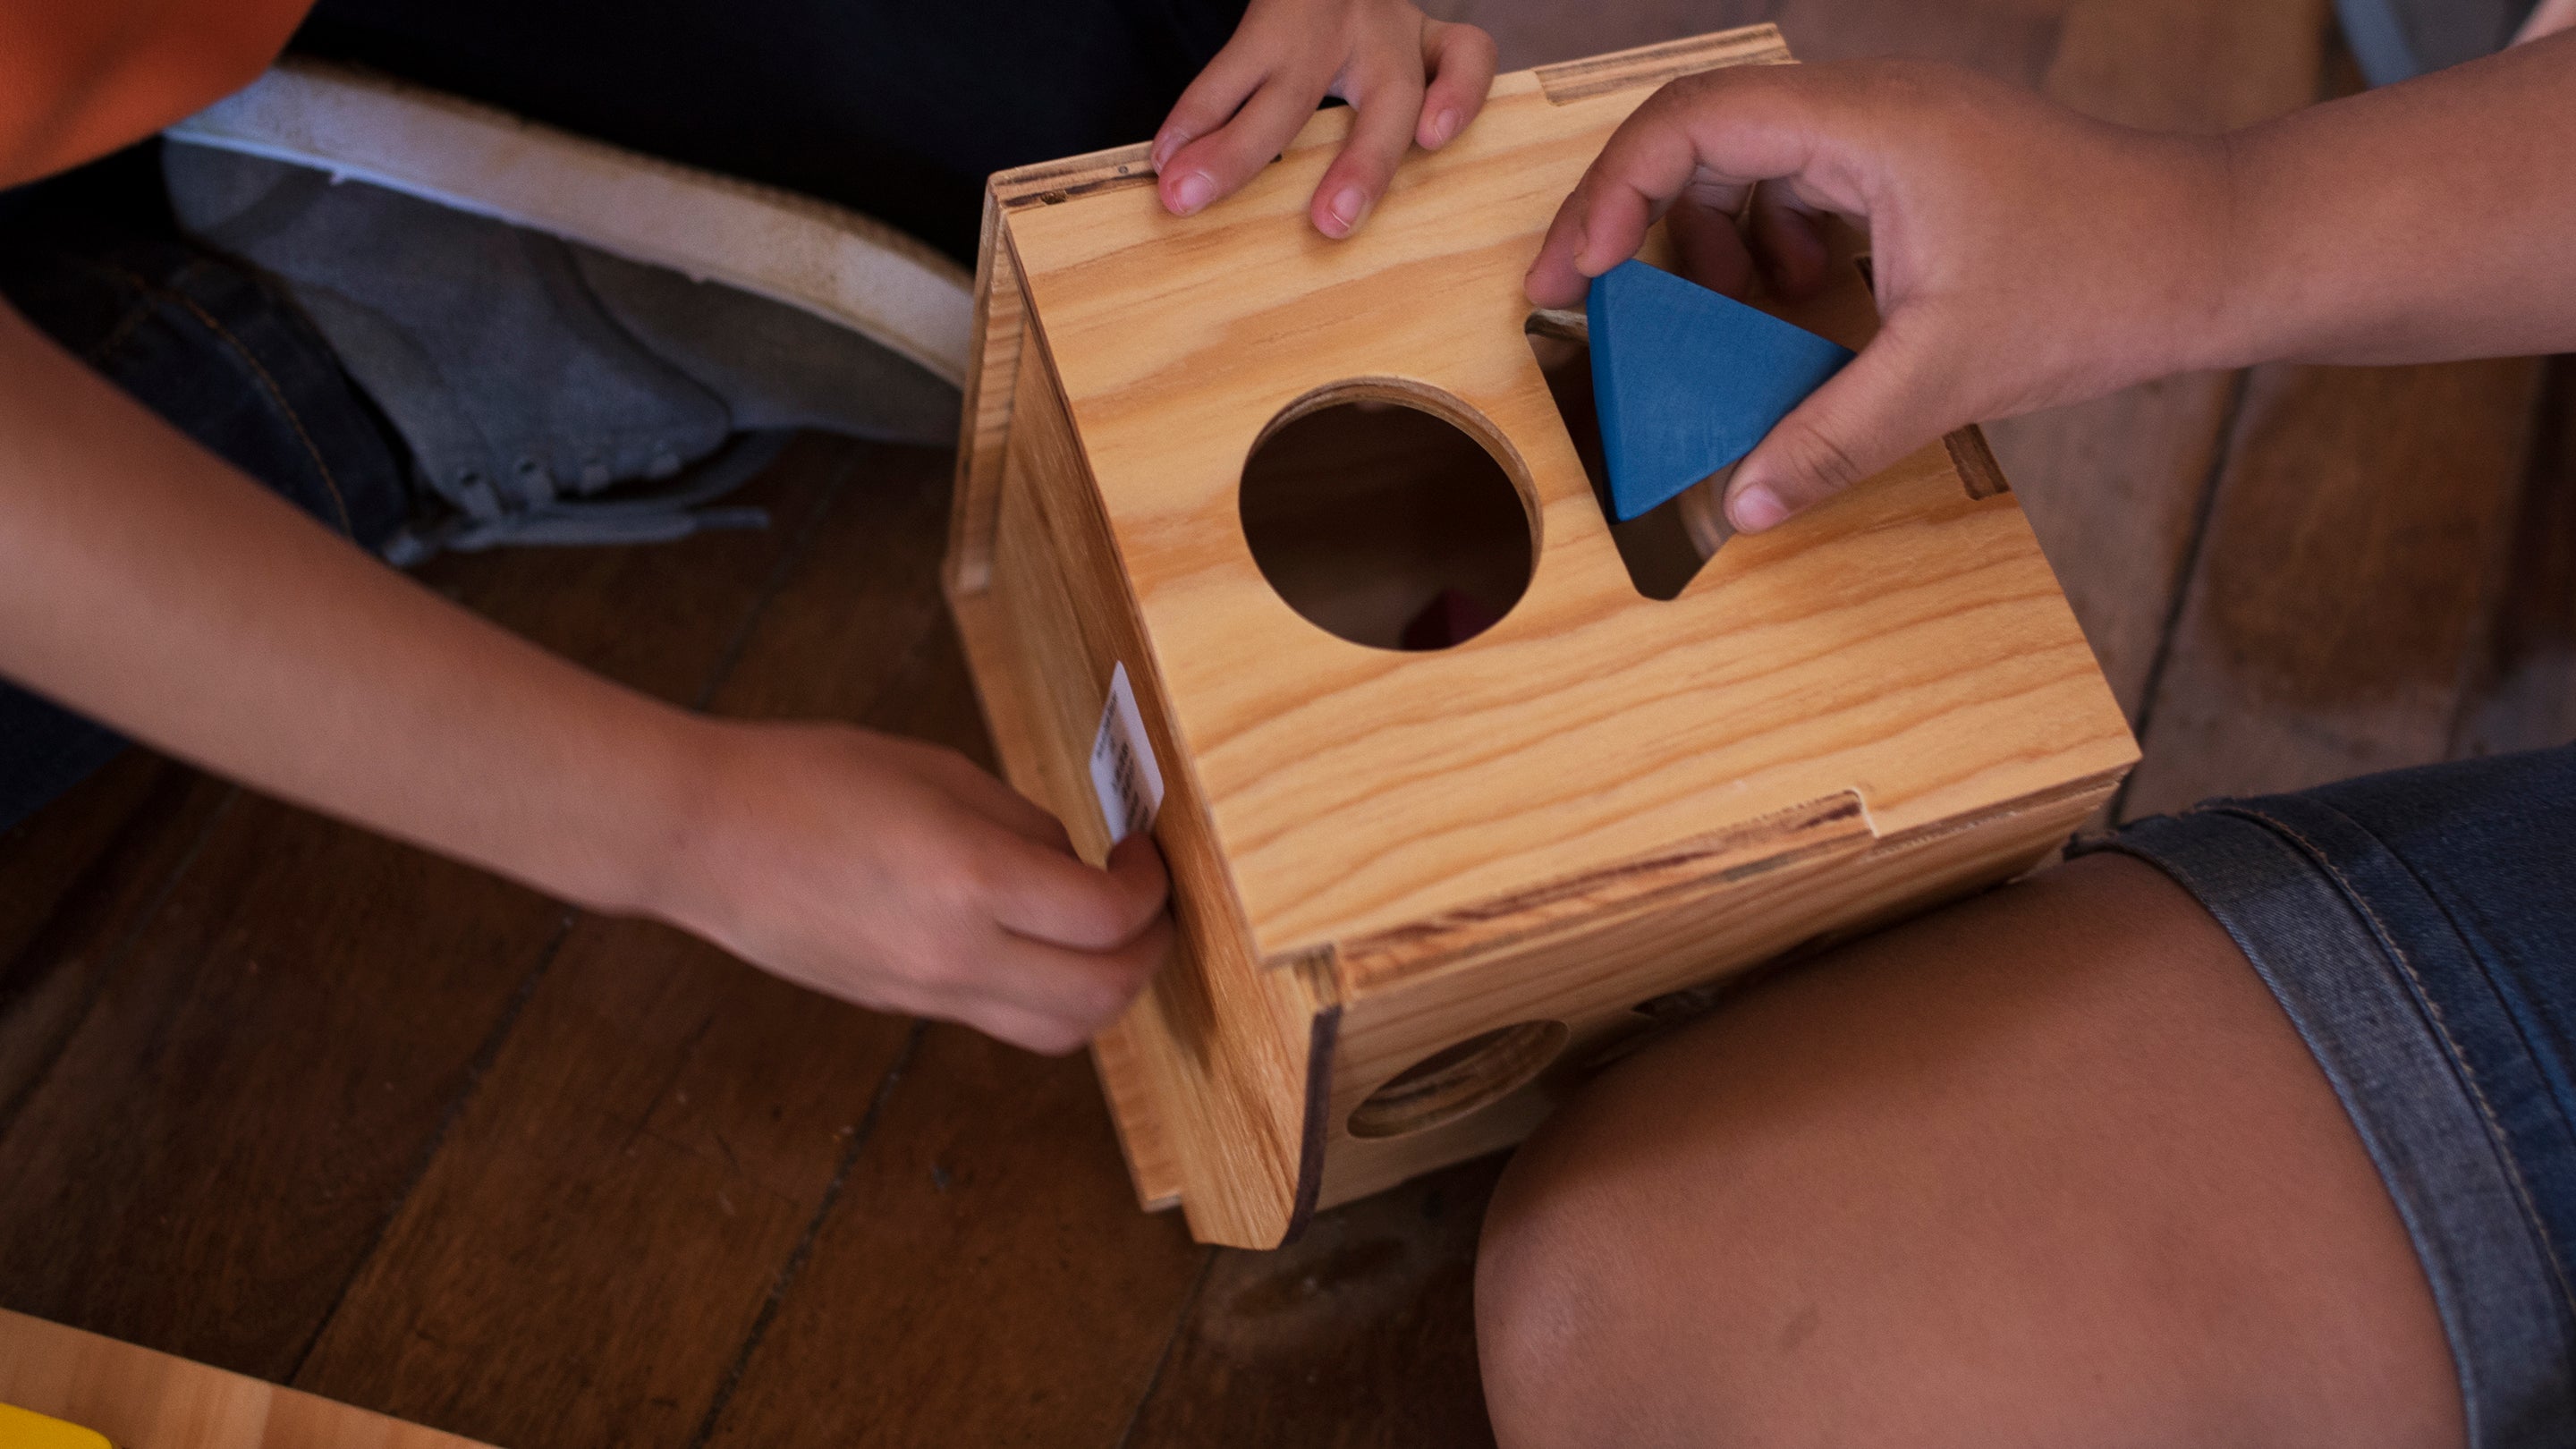 Palos de madera para percusión Montessori – La Fábrica de Juguetes UCO